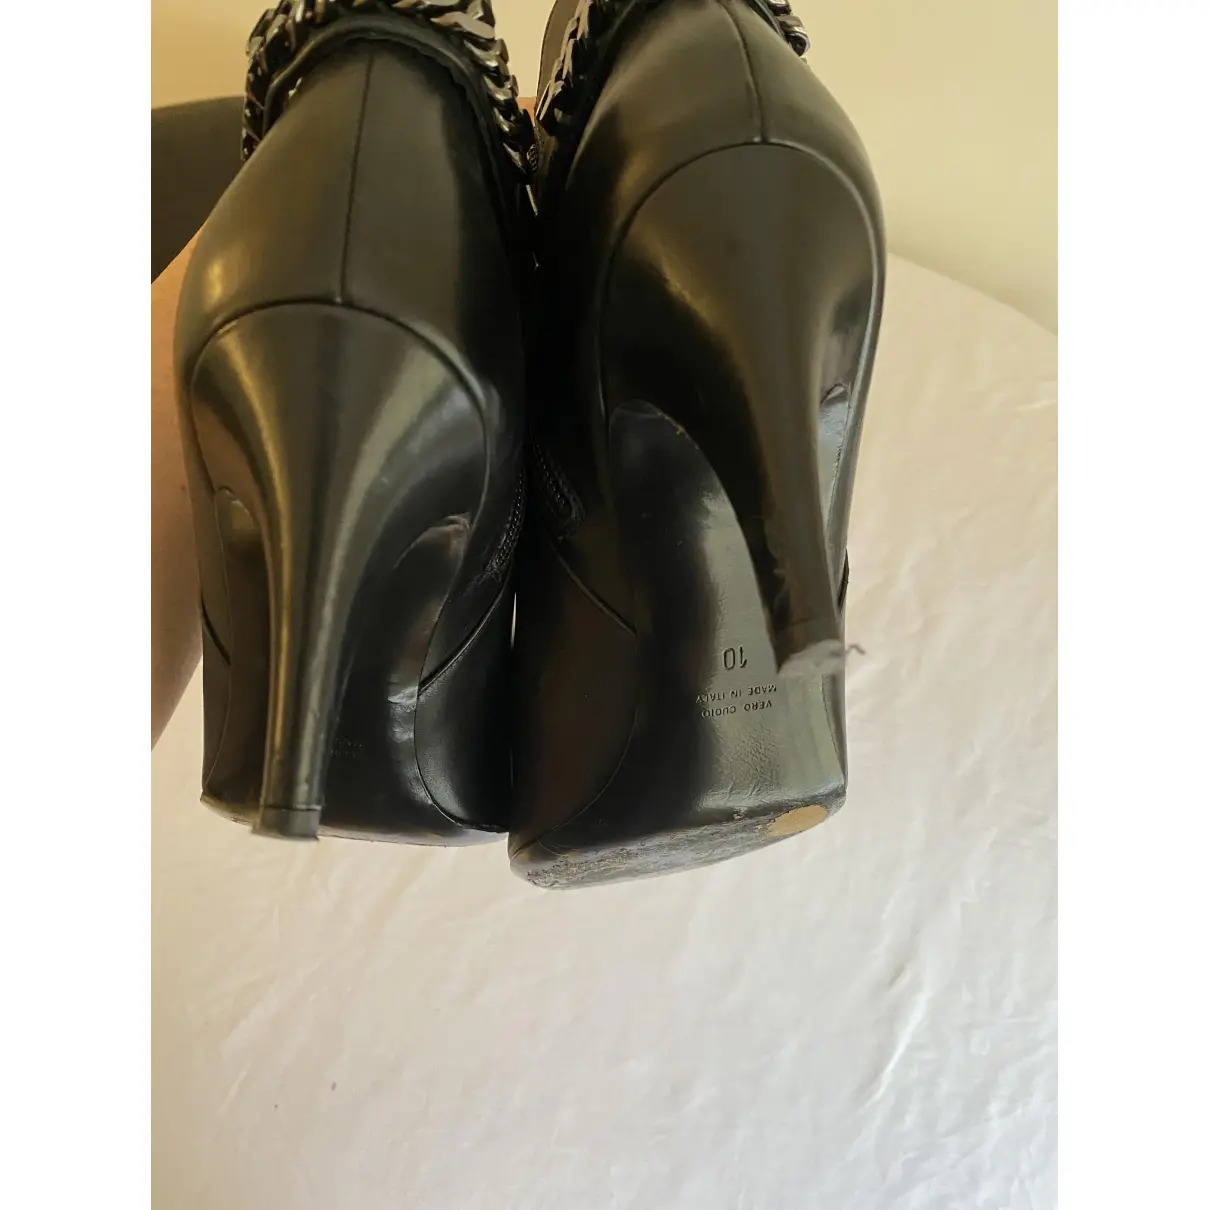 Leather ankle boots Aquatalia